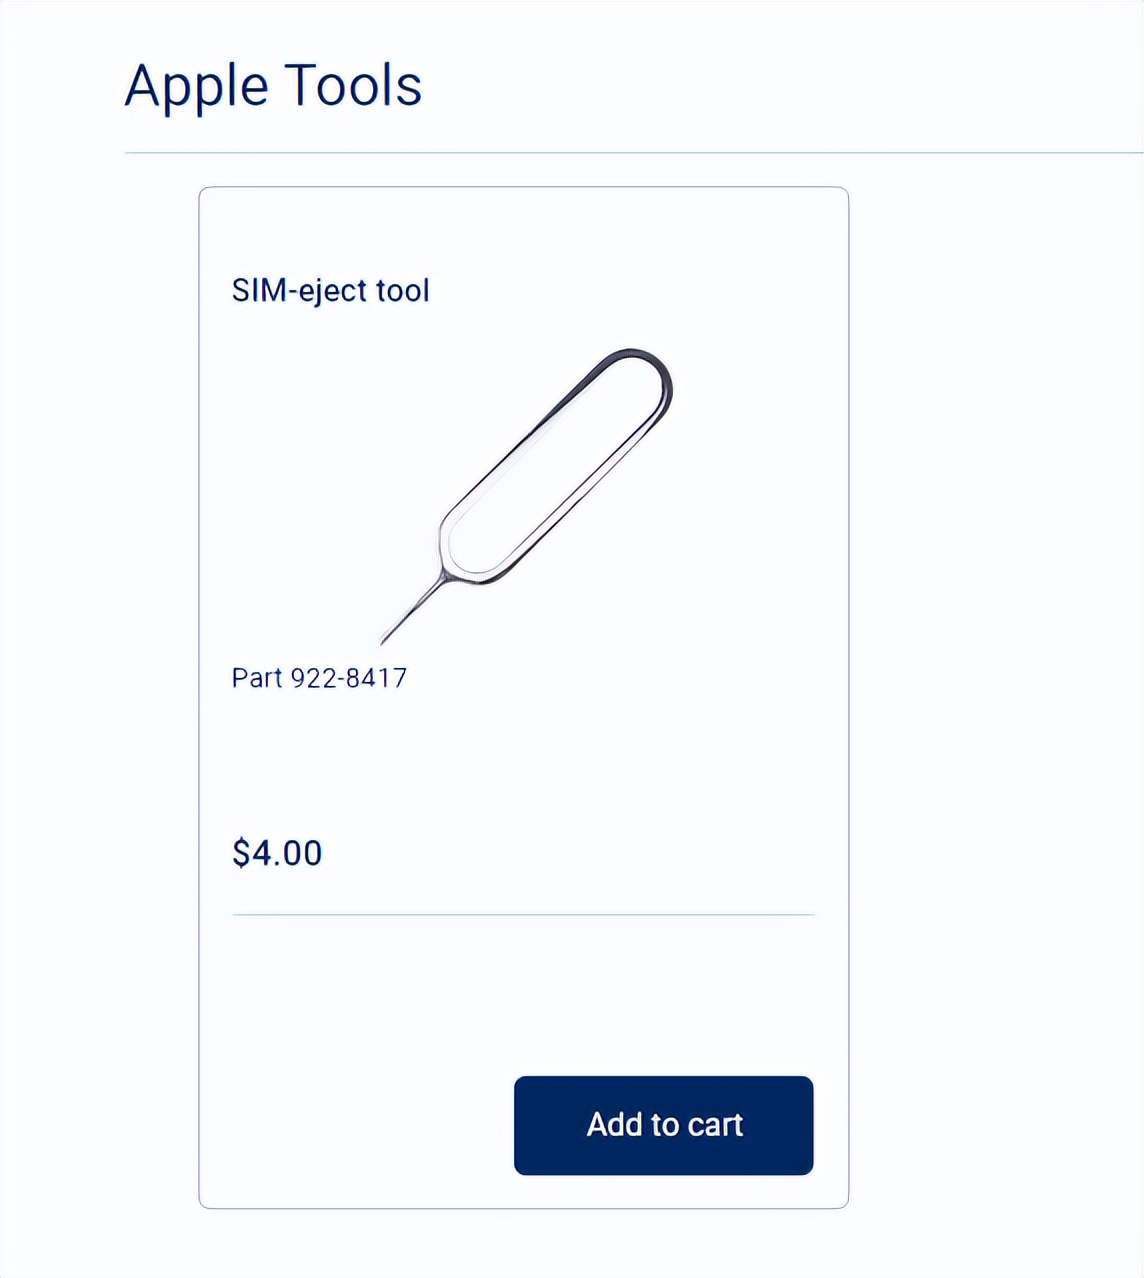 苹果SIM卡针卖26元引热议 网友:几块钱就能买到数百根!